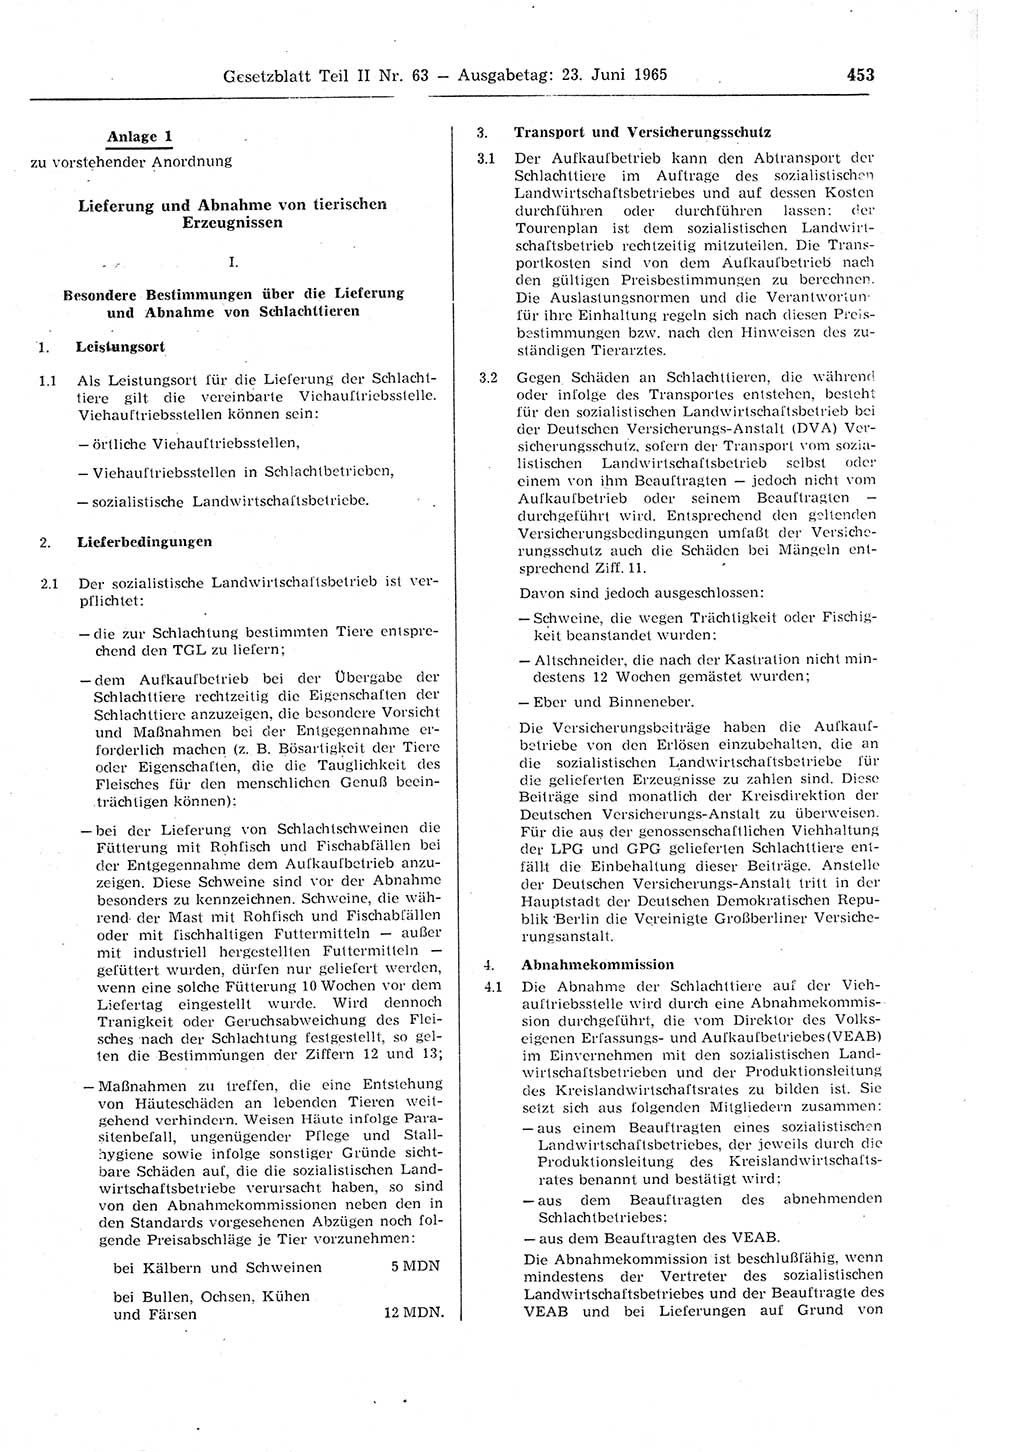 Gesetzblatt (GBl.) der Deutschen Demokratischen Republik (DDR) Teil ⅠⅠ 1965, Seite 453 (GBl. DDR ⅠⅠ 1965, S. 453)